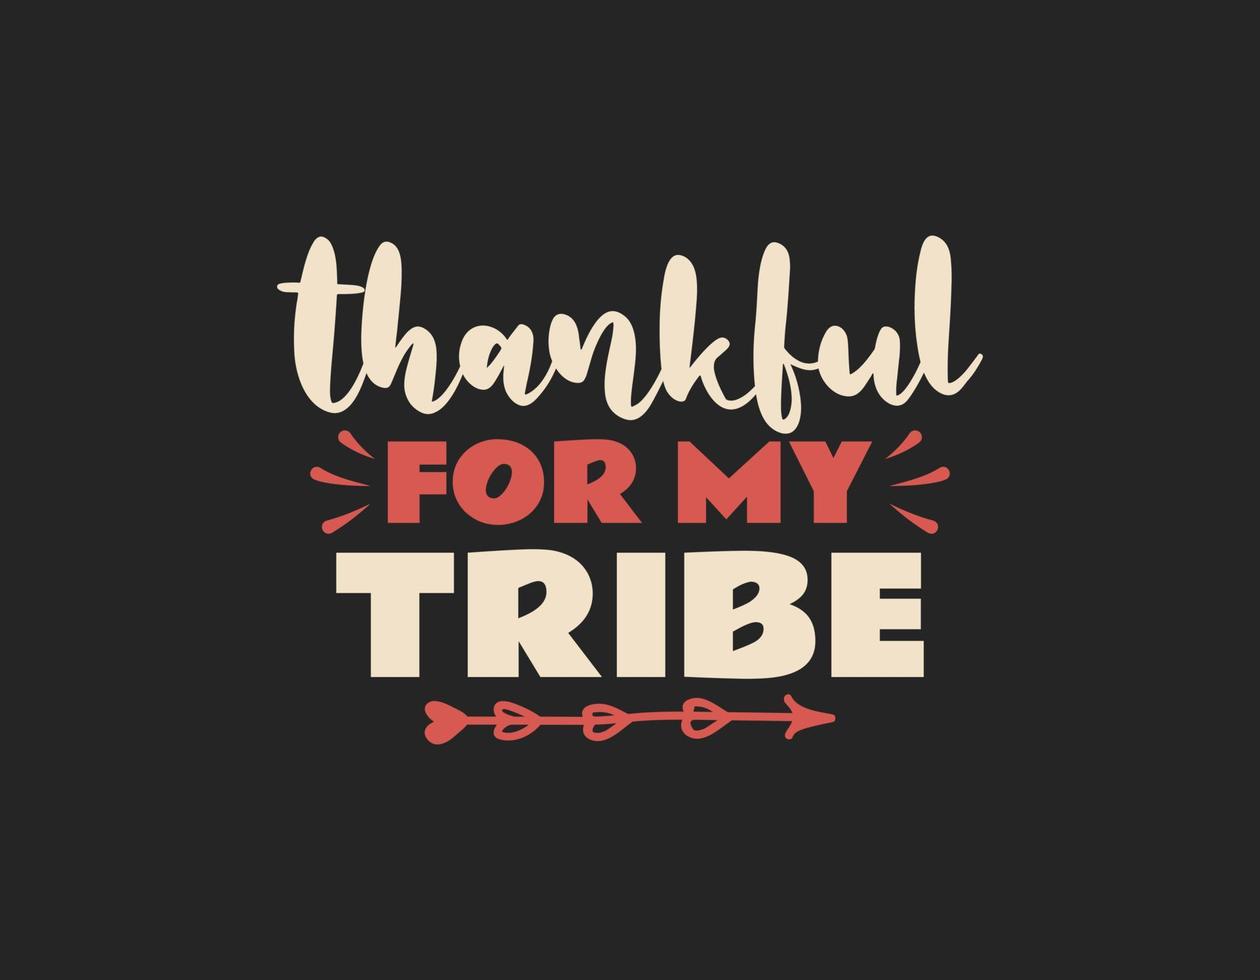 agradecido por el diseño de camisetas de mi tribu, vector de letras de acción de gracias para camisetas, afiches, tarjetas, invitaciones, calcomanías, pancartas, publicidad y otros usos